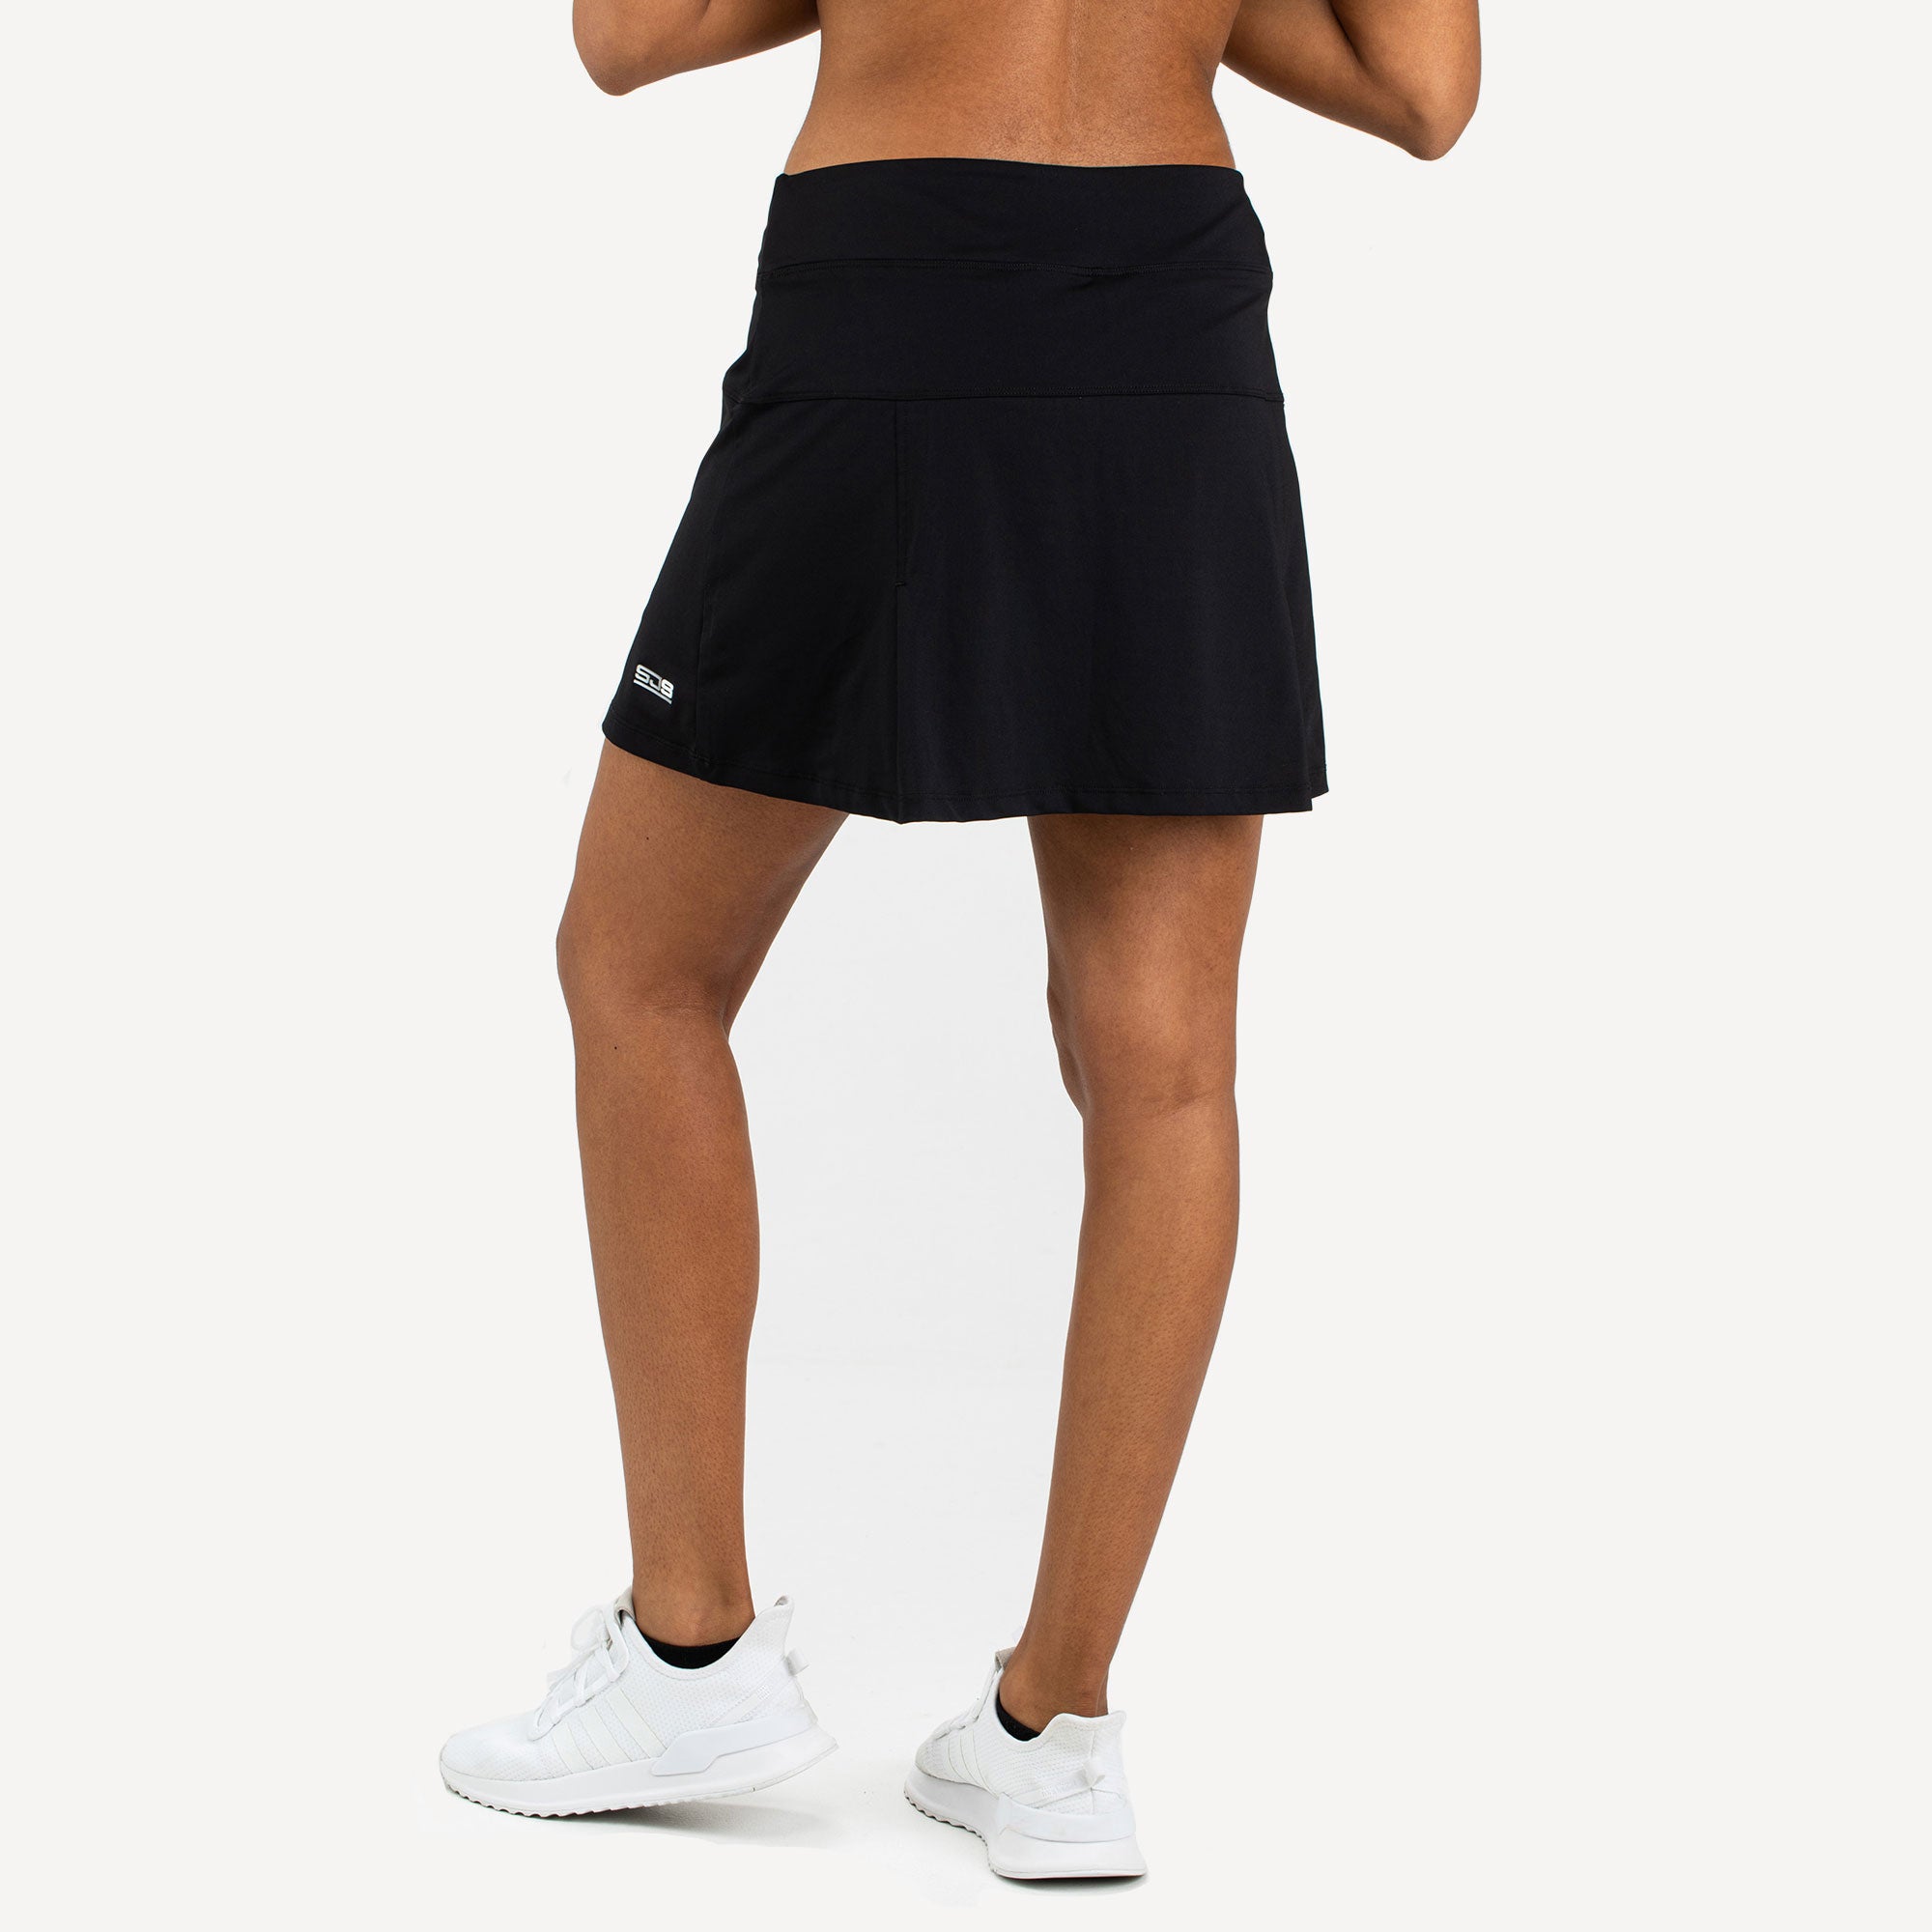 Sjeng Sports Monica Women's Tennis Skirt Black (2)